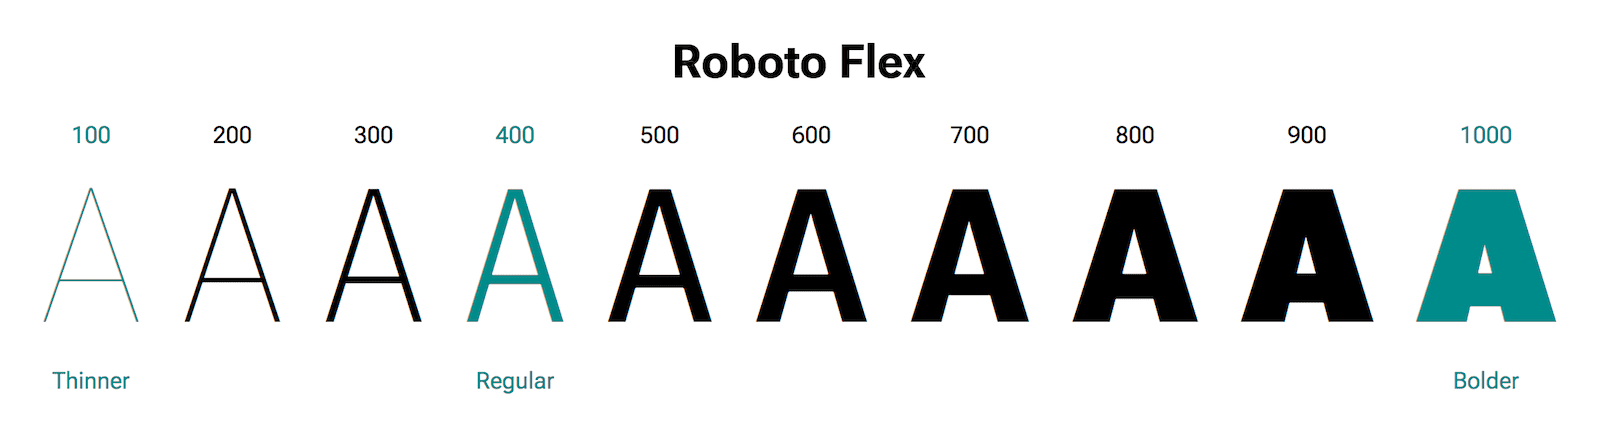 האות A מוצגת במשקלים שונים